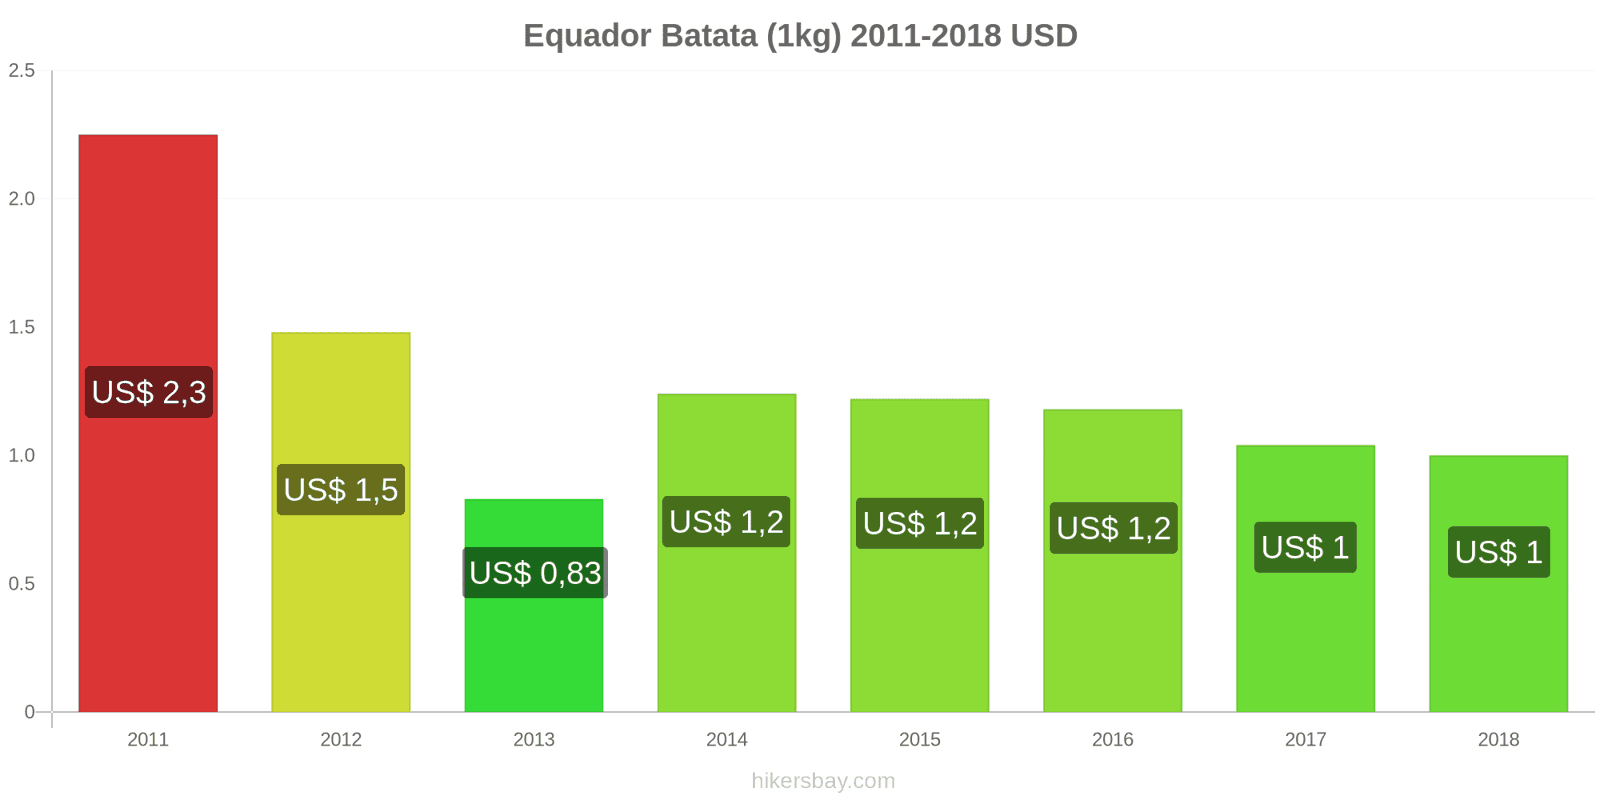 Equador mudanças de preços Batatas (1kg) hikersbay.com